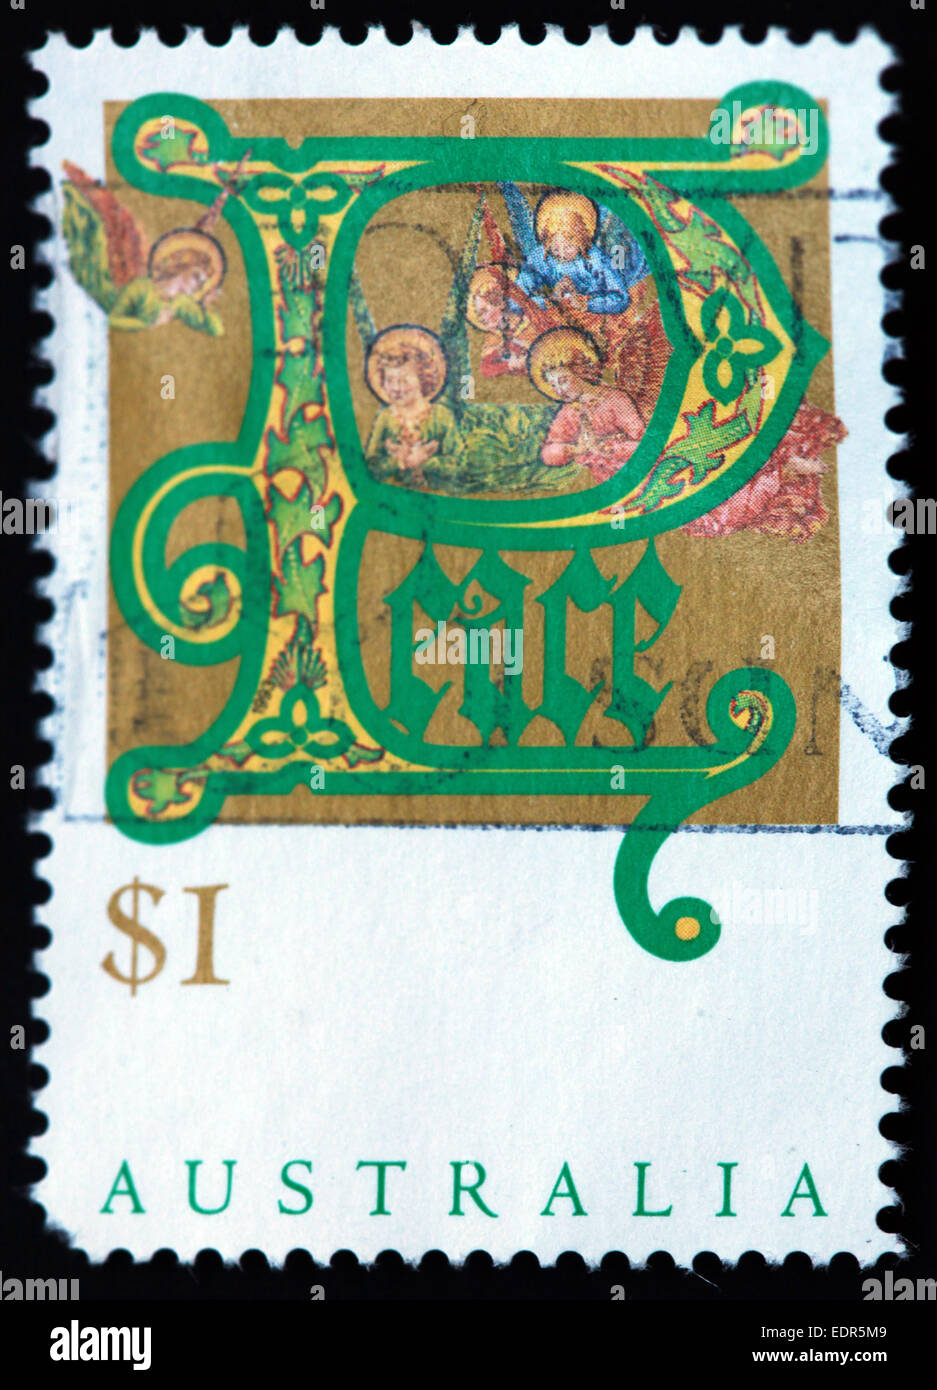 Utilisé et oblitérée Australie / Austrailian Stamp Noël paix $1 Banque D'Images